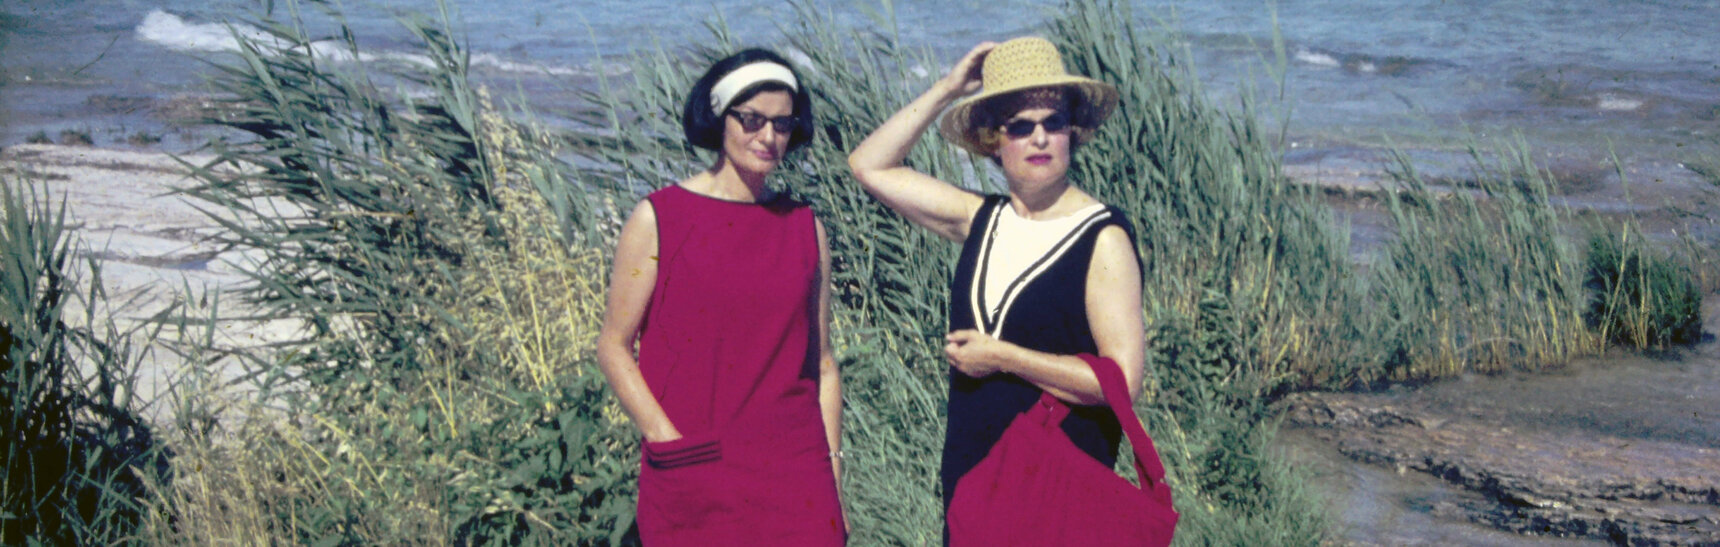 Ein Urlaubsdia mit zwei eleganten Grazer Damen an der Adriaküste mit roter Badetasche und rotem Kleid.